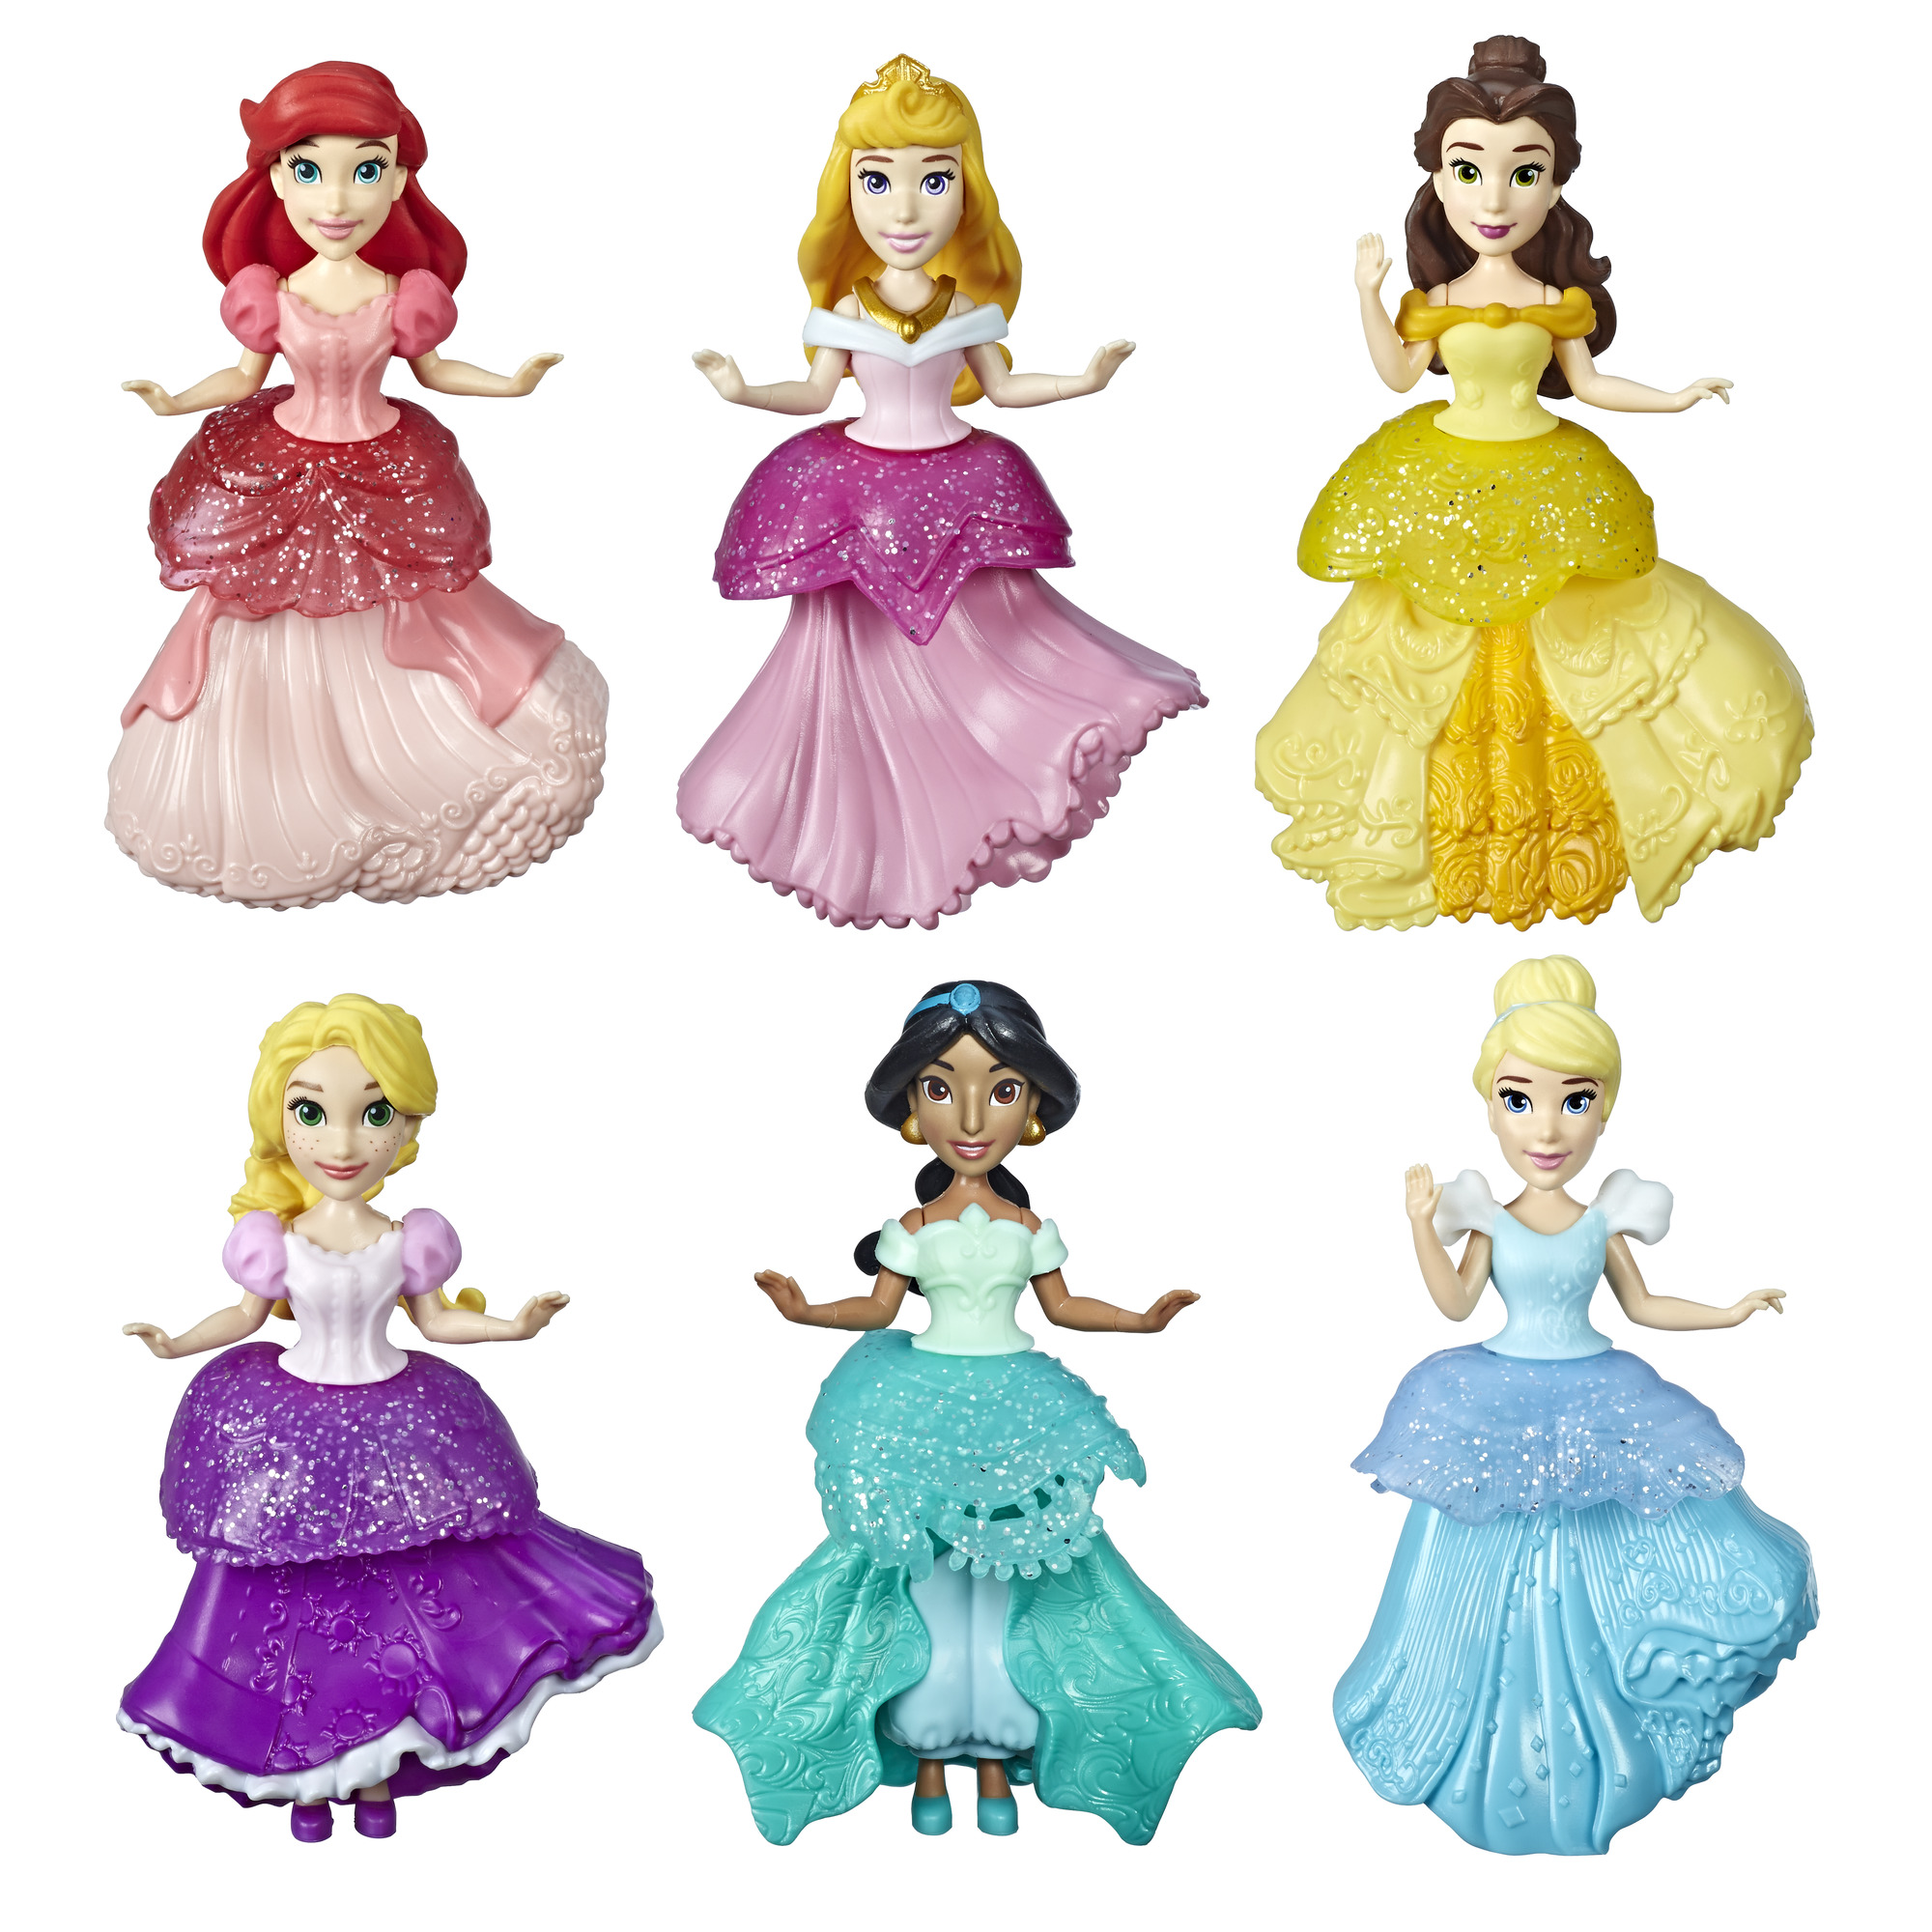 Принцессы дисней купить. Куклы Хасбро принцессы Дисней. Кукла Hasbro Disney Princess Royal clips, 9 см, e3049. Принцесс мини-кукла 6pak Disney Hasbro. Disney куклы "принцессы - модницы".